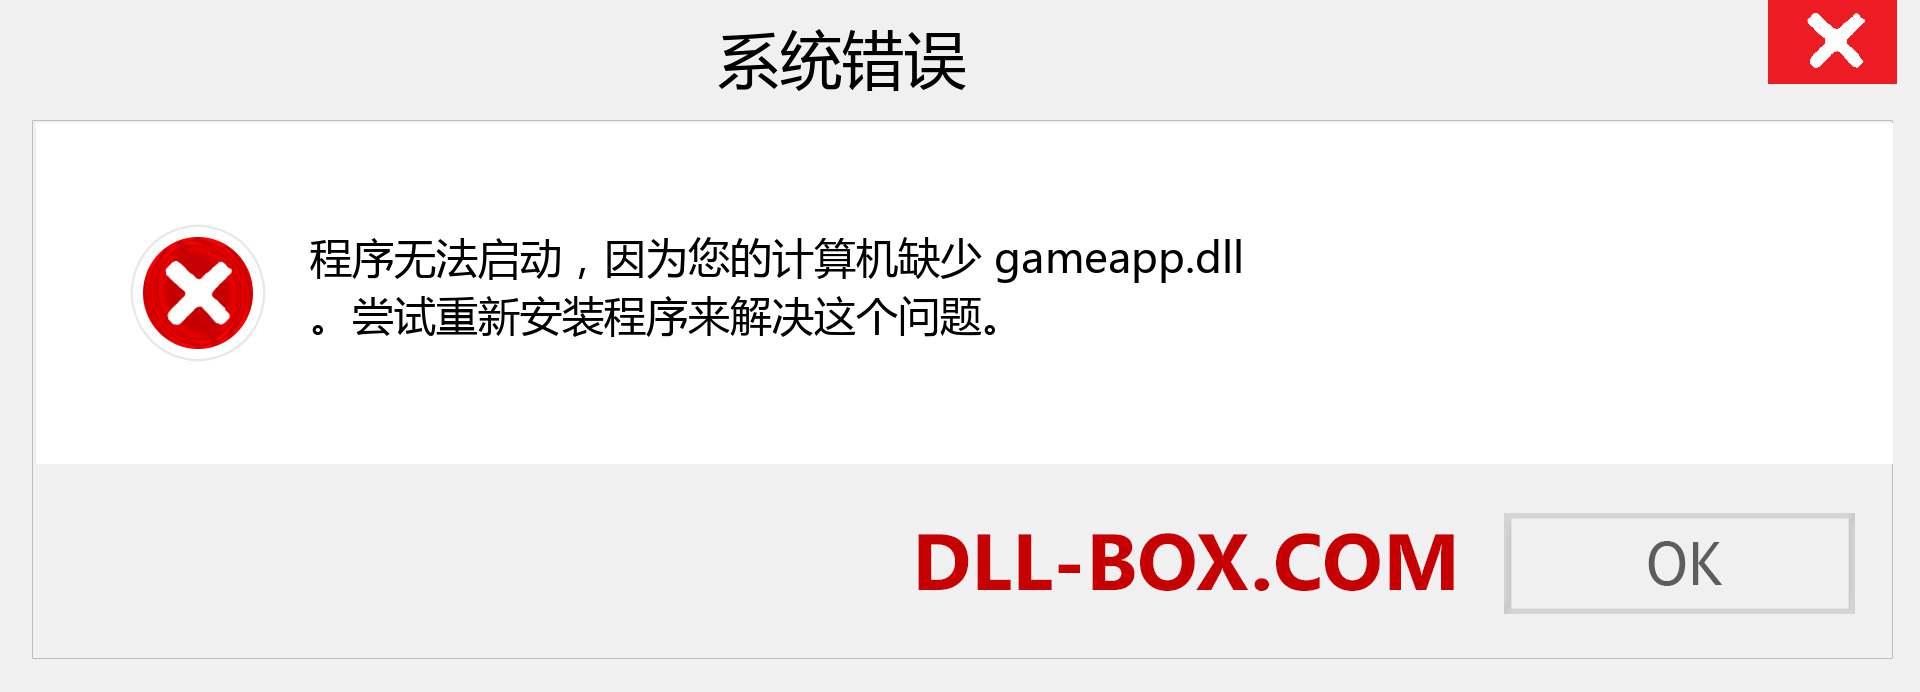 gameapp.dll 文件丢失？。 适用于 Windows 7、8、10 的下载 - 修复 Windows、照片、图像上的 gameapp dll 丢失错误